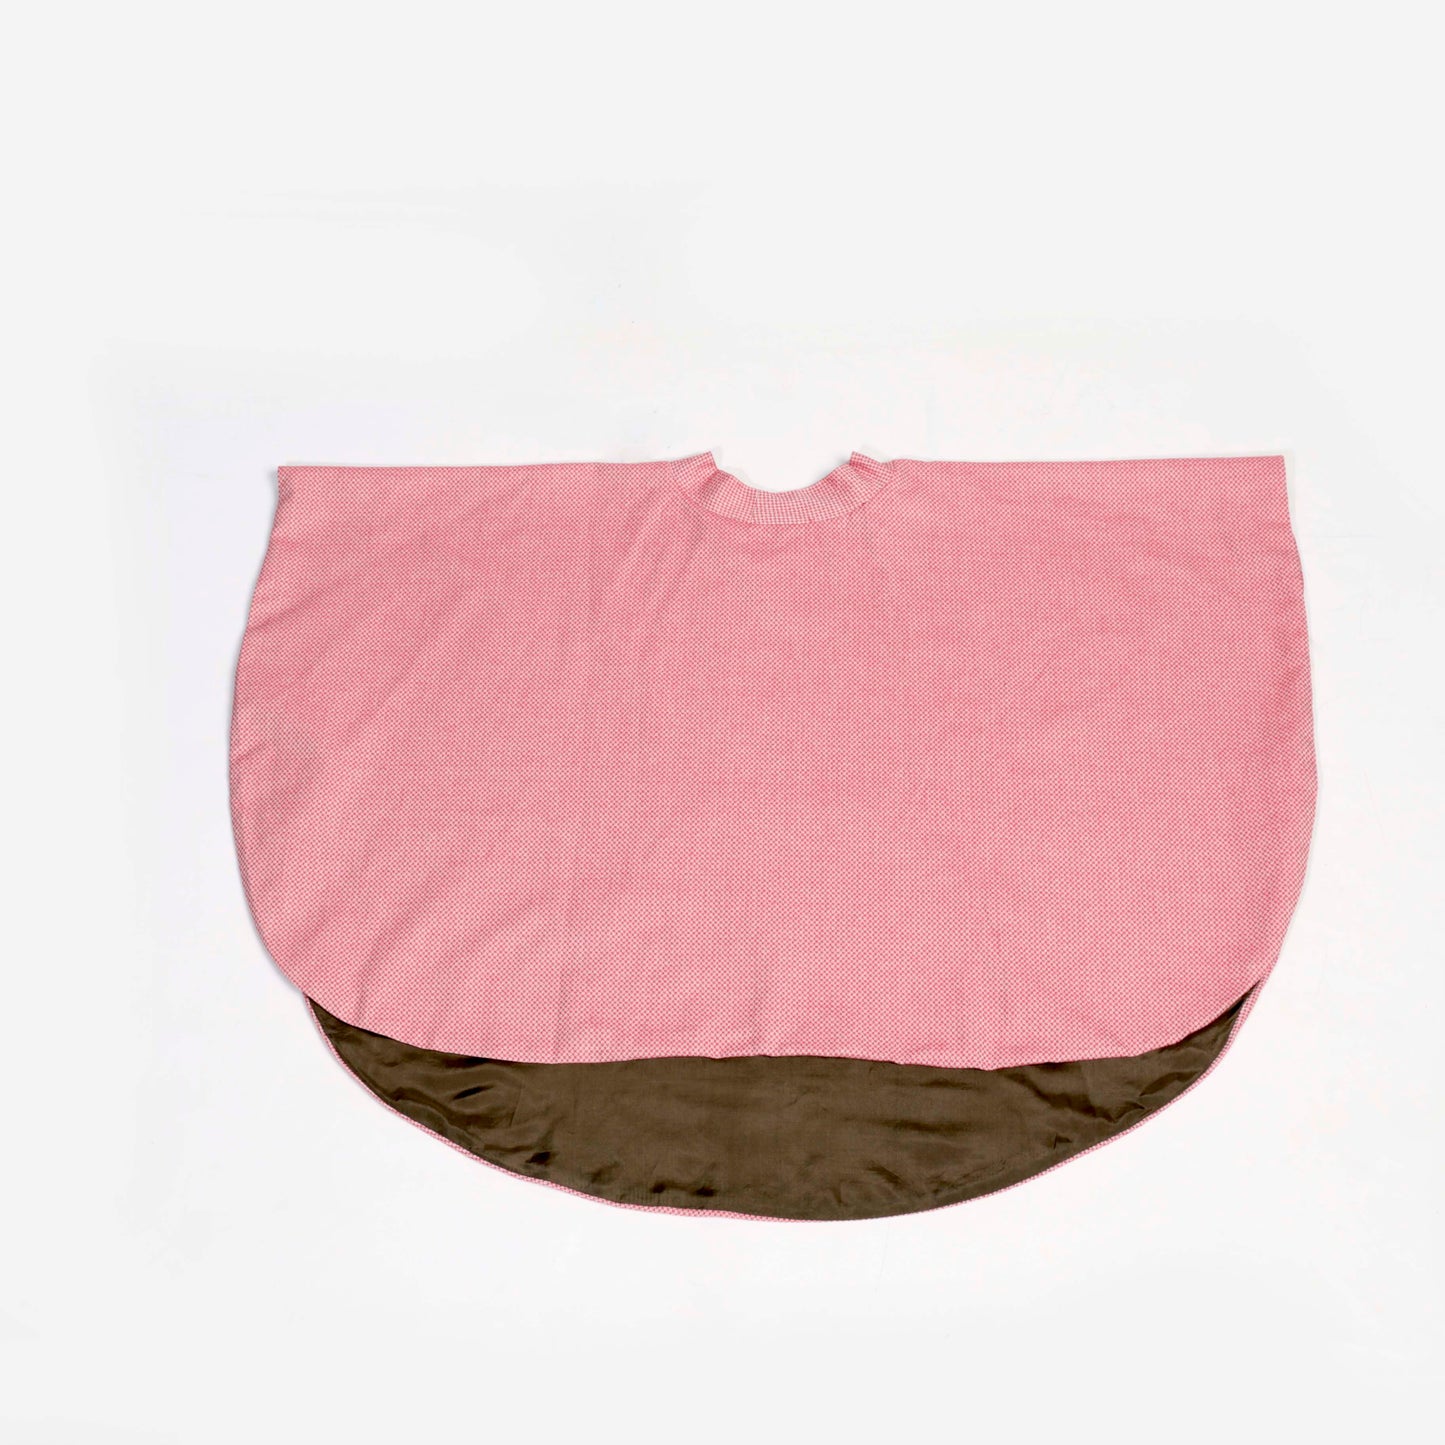 Capa OLIVIA en color rosa 100% algodón